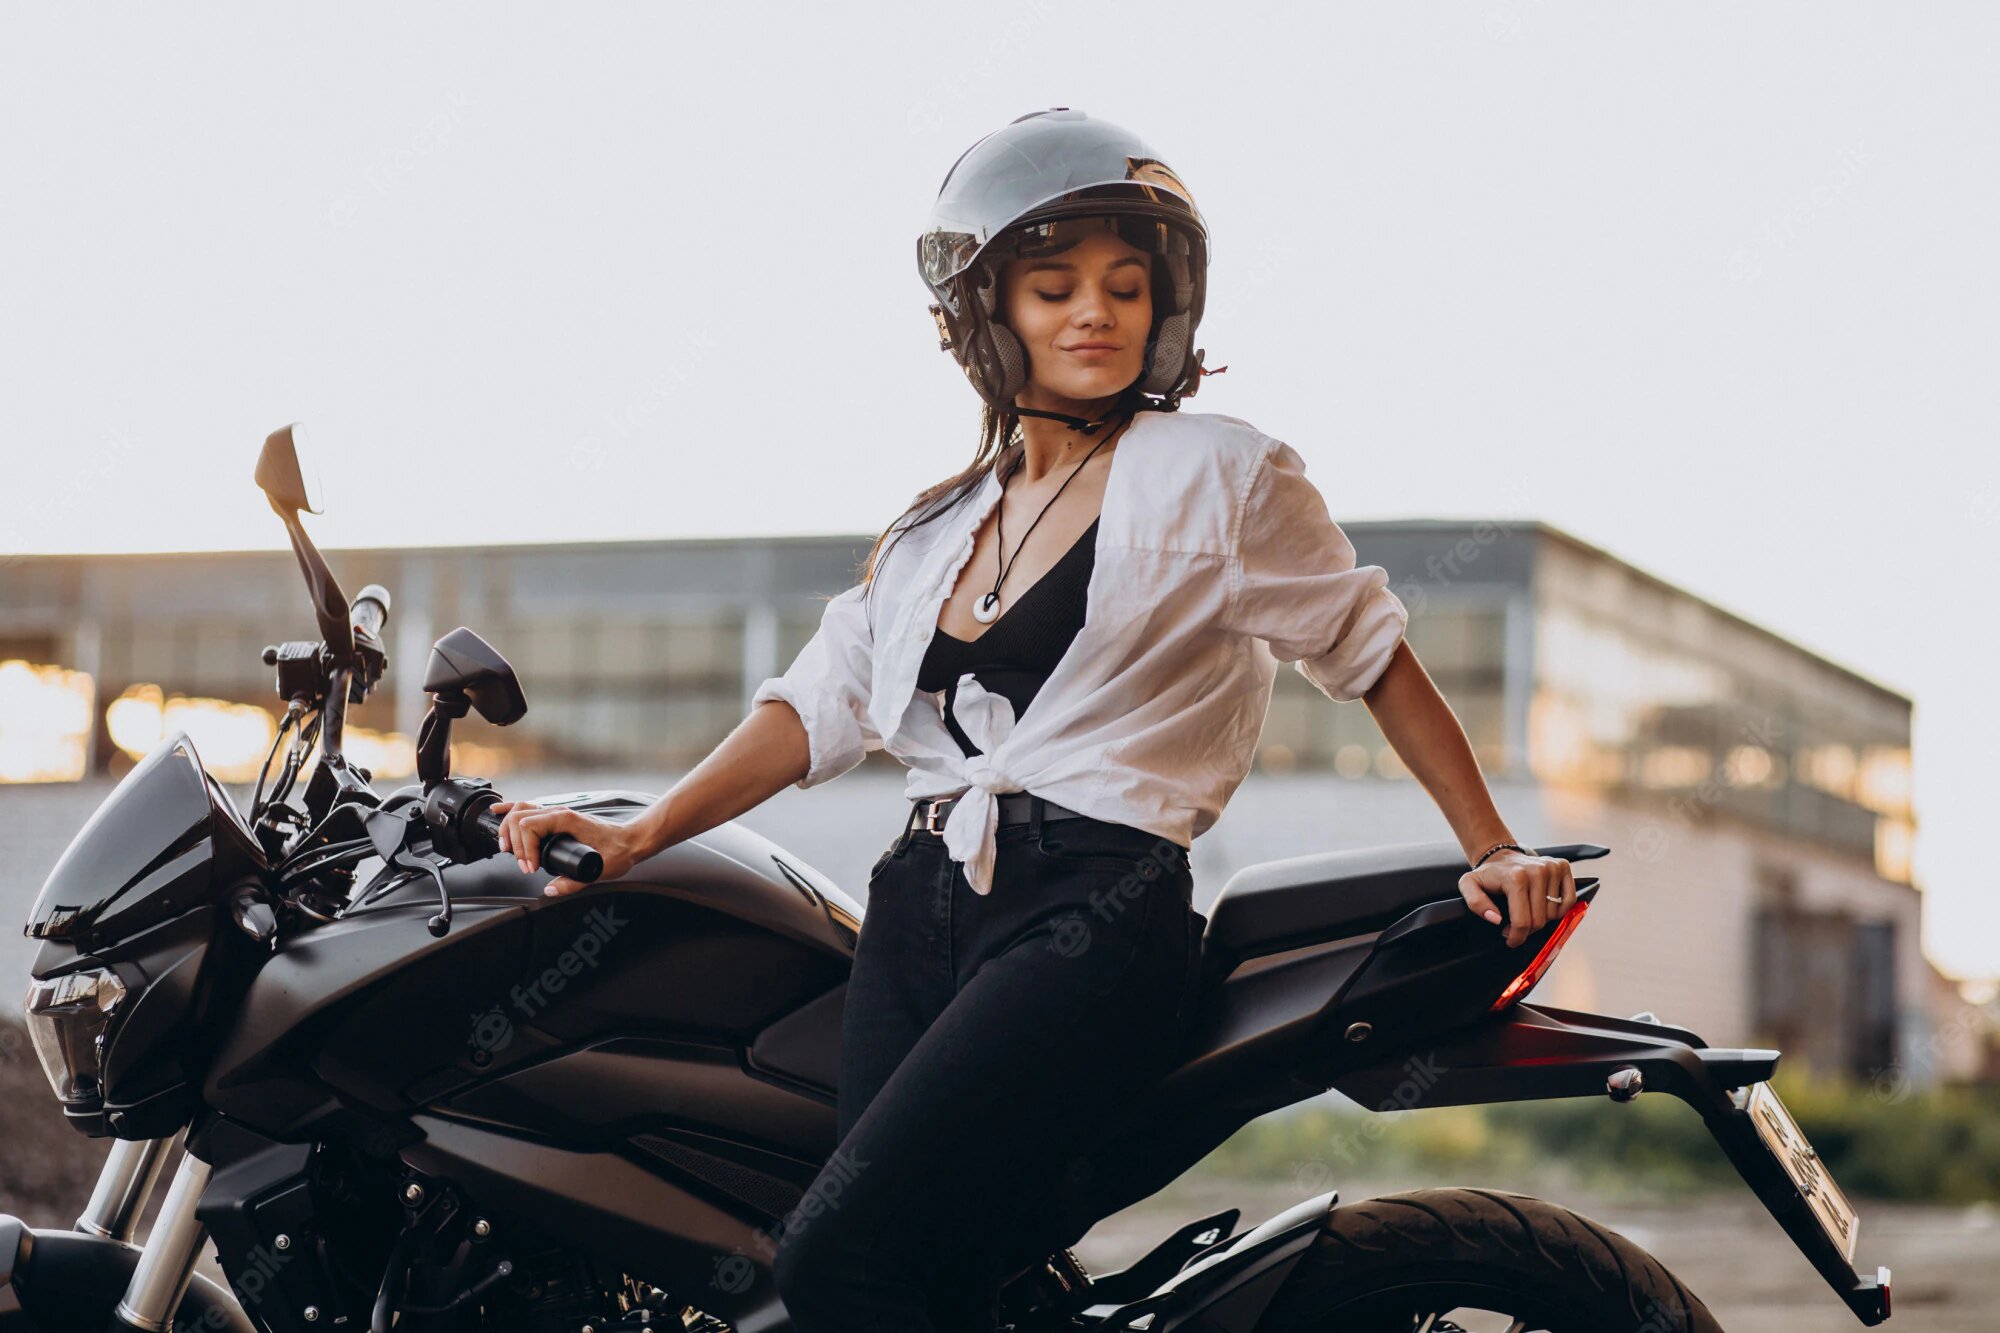 Cascos de moto para mujer, conoce nuestros favoritos - Motopasión